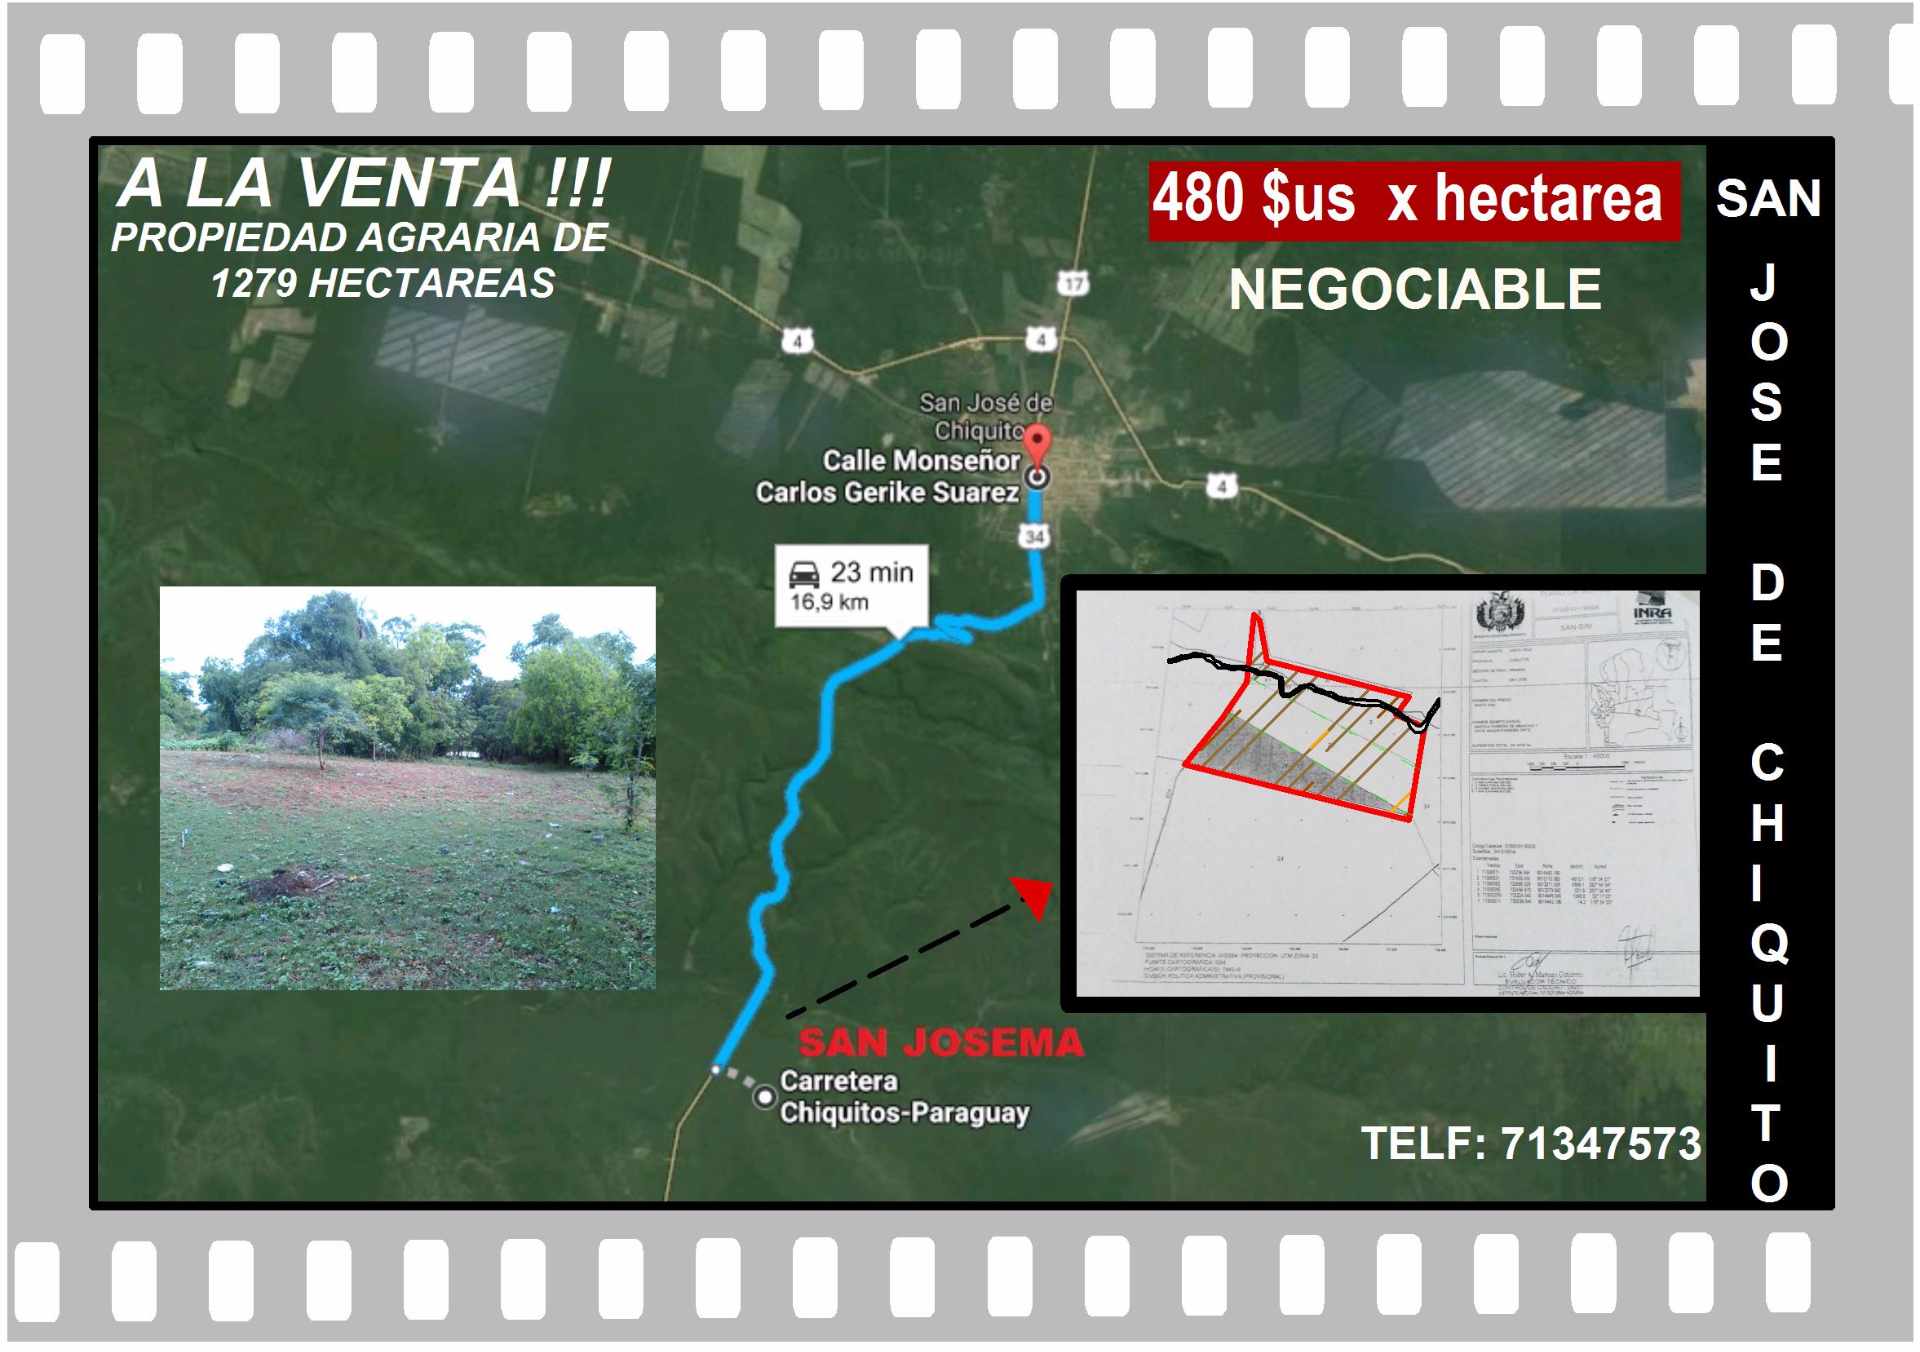 Terreno  Vento excelente Propiedad a 16 km de San Jose  de chiquitos  1279 hectareas  Foto 1